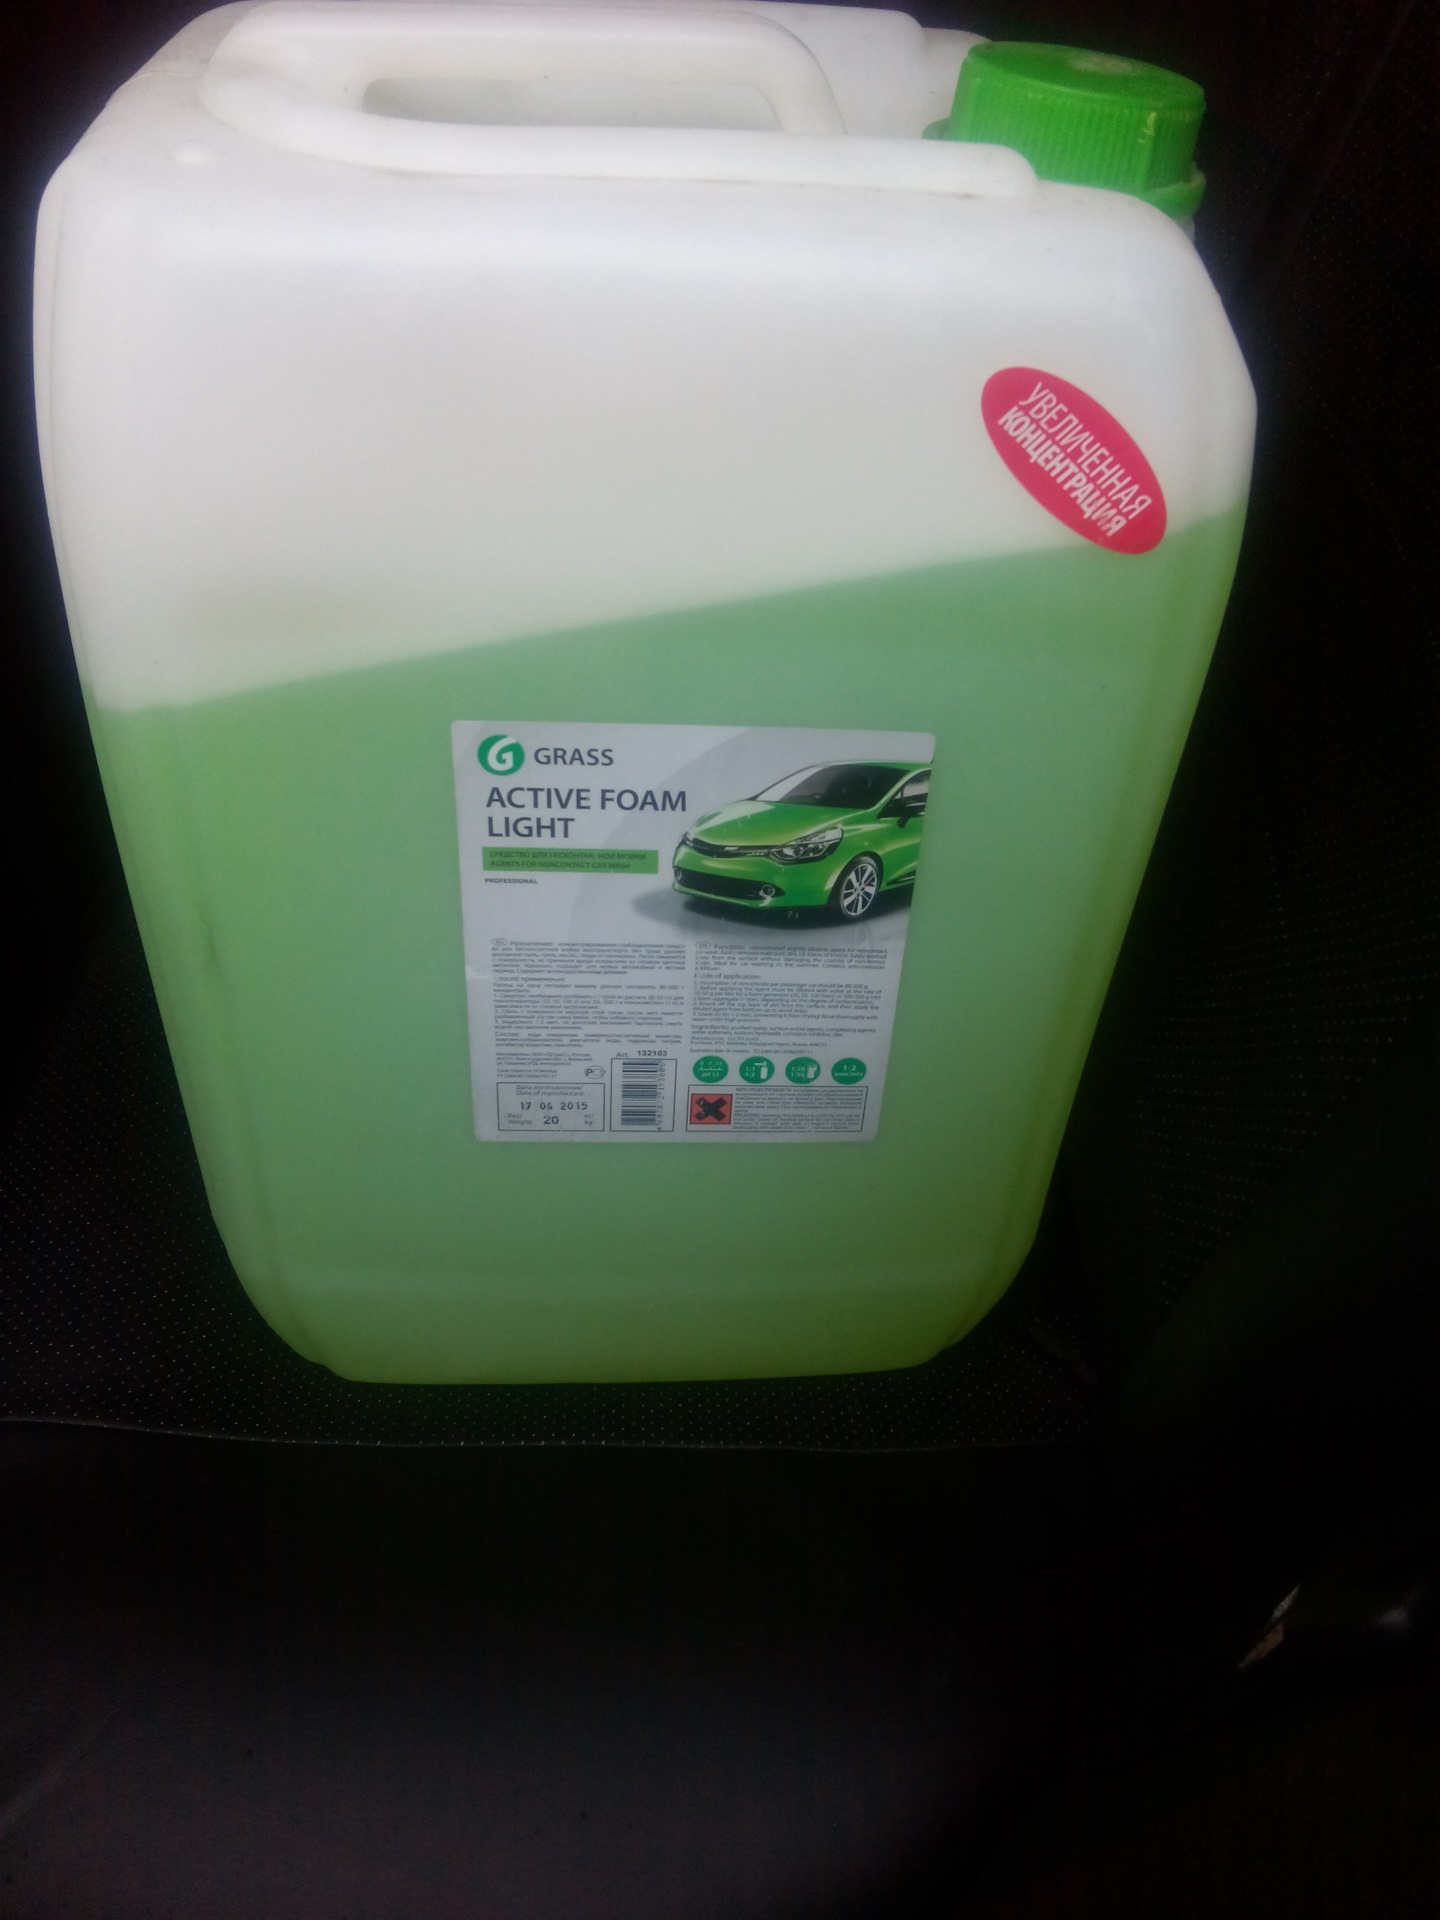 Бесконтактная химия "Active Foam Light" (1 кг) gross. Химия для мойки grass зеленая 20 литров. Грасс бесконтактная мойка 20 литровый. Grass Lite химия 20л.